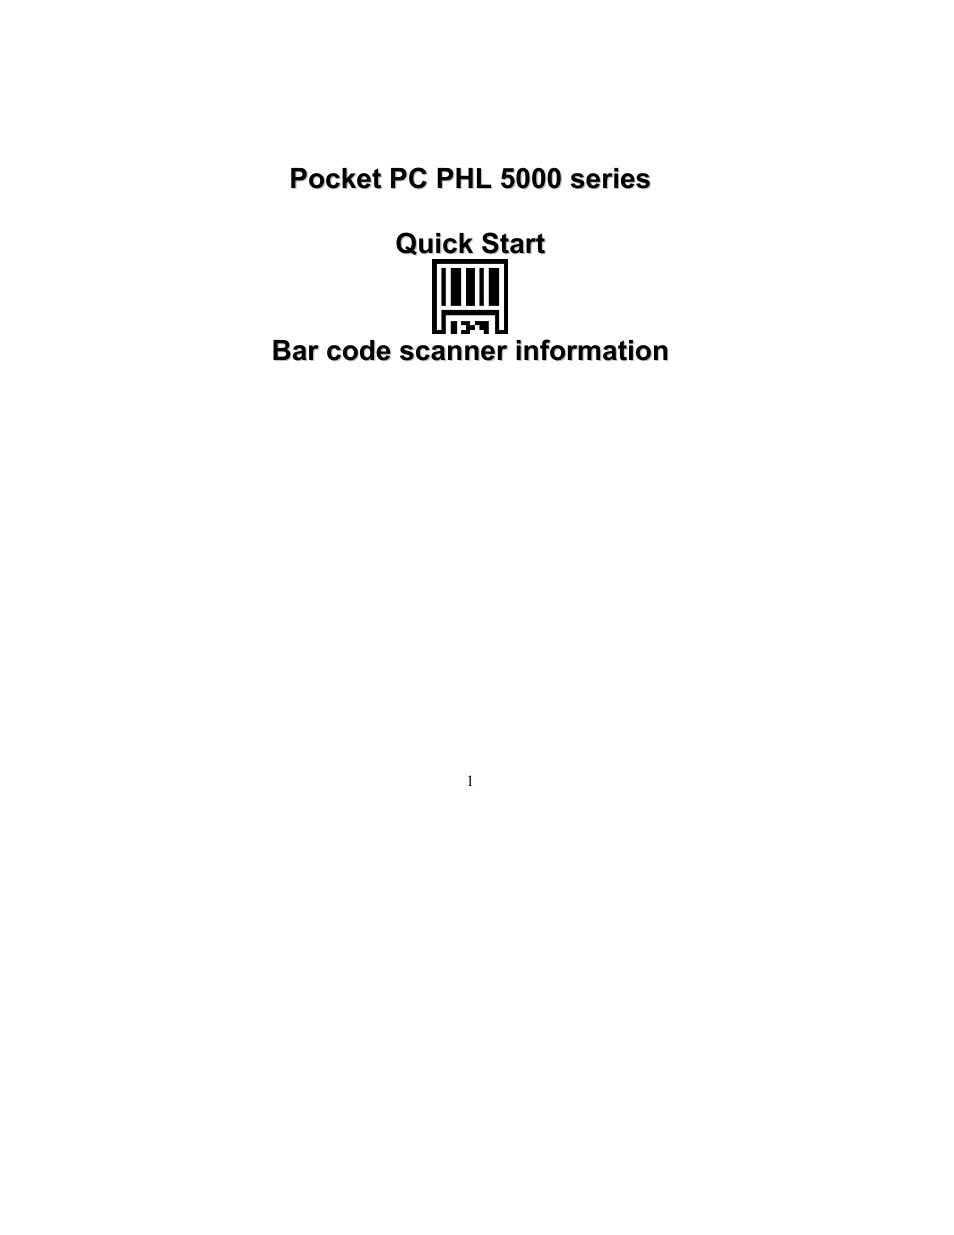 PHL 5100 addendum